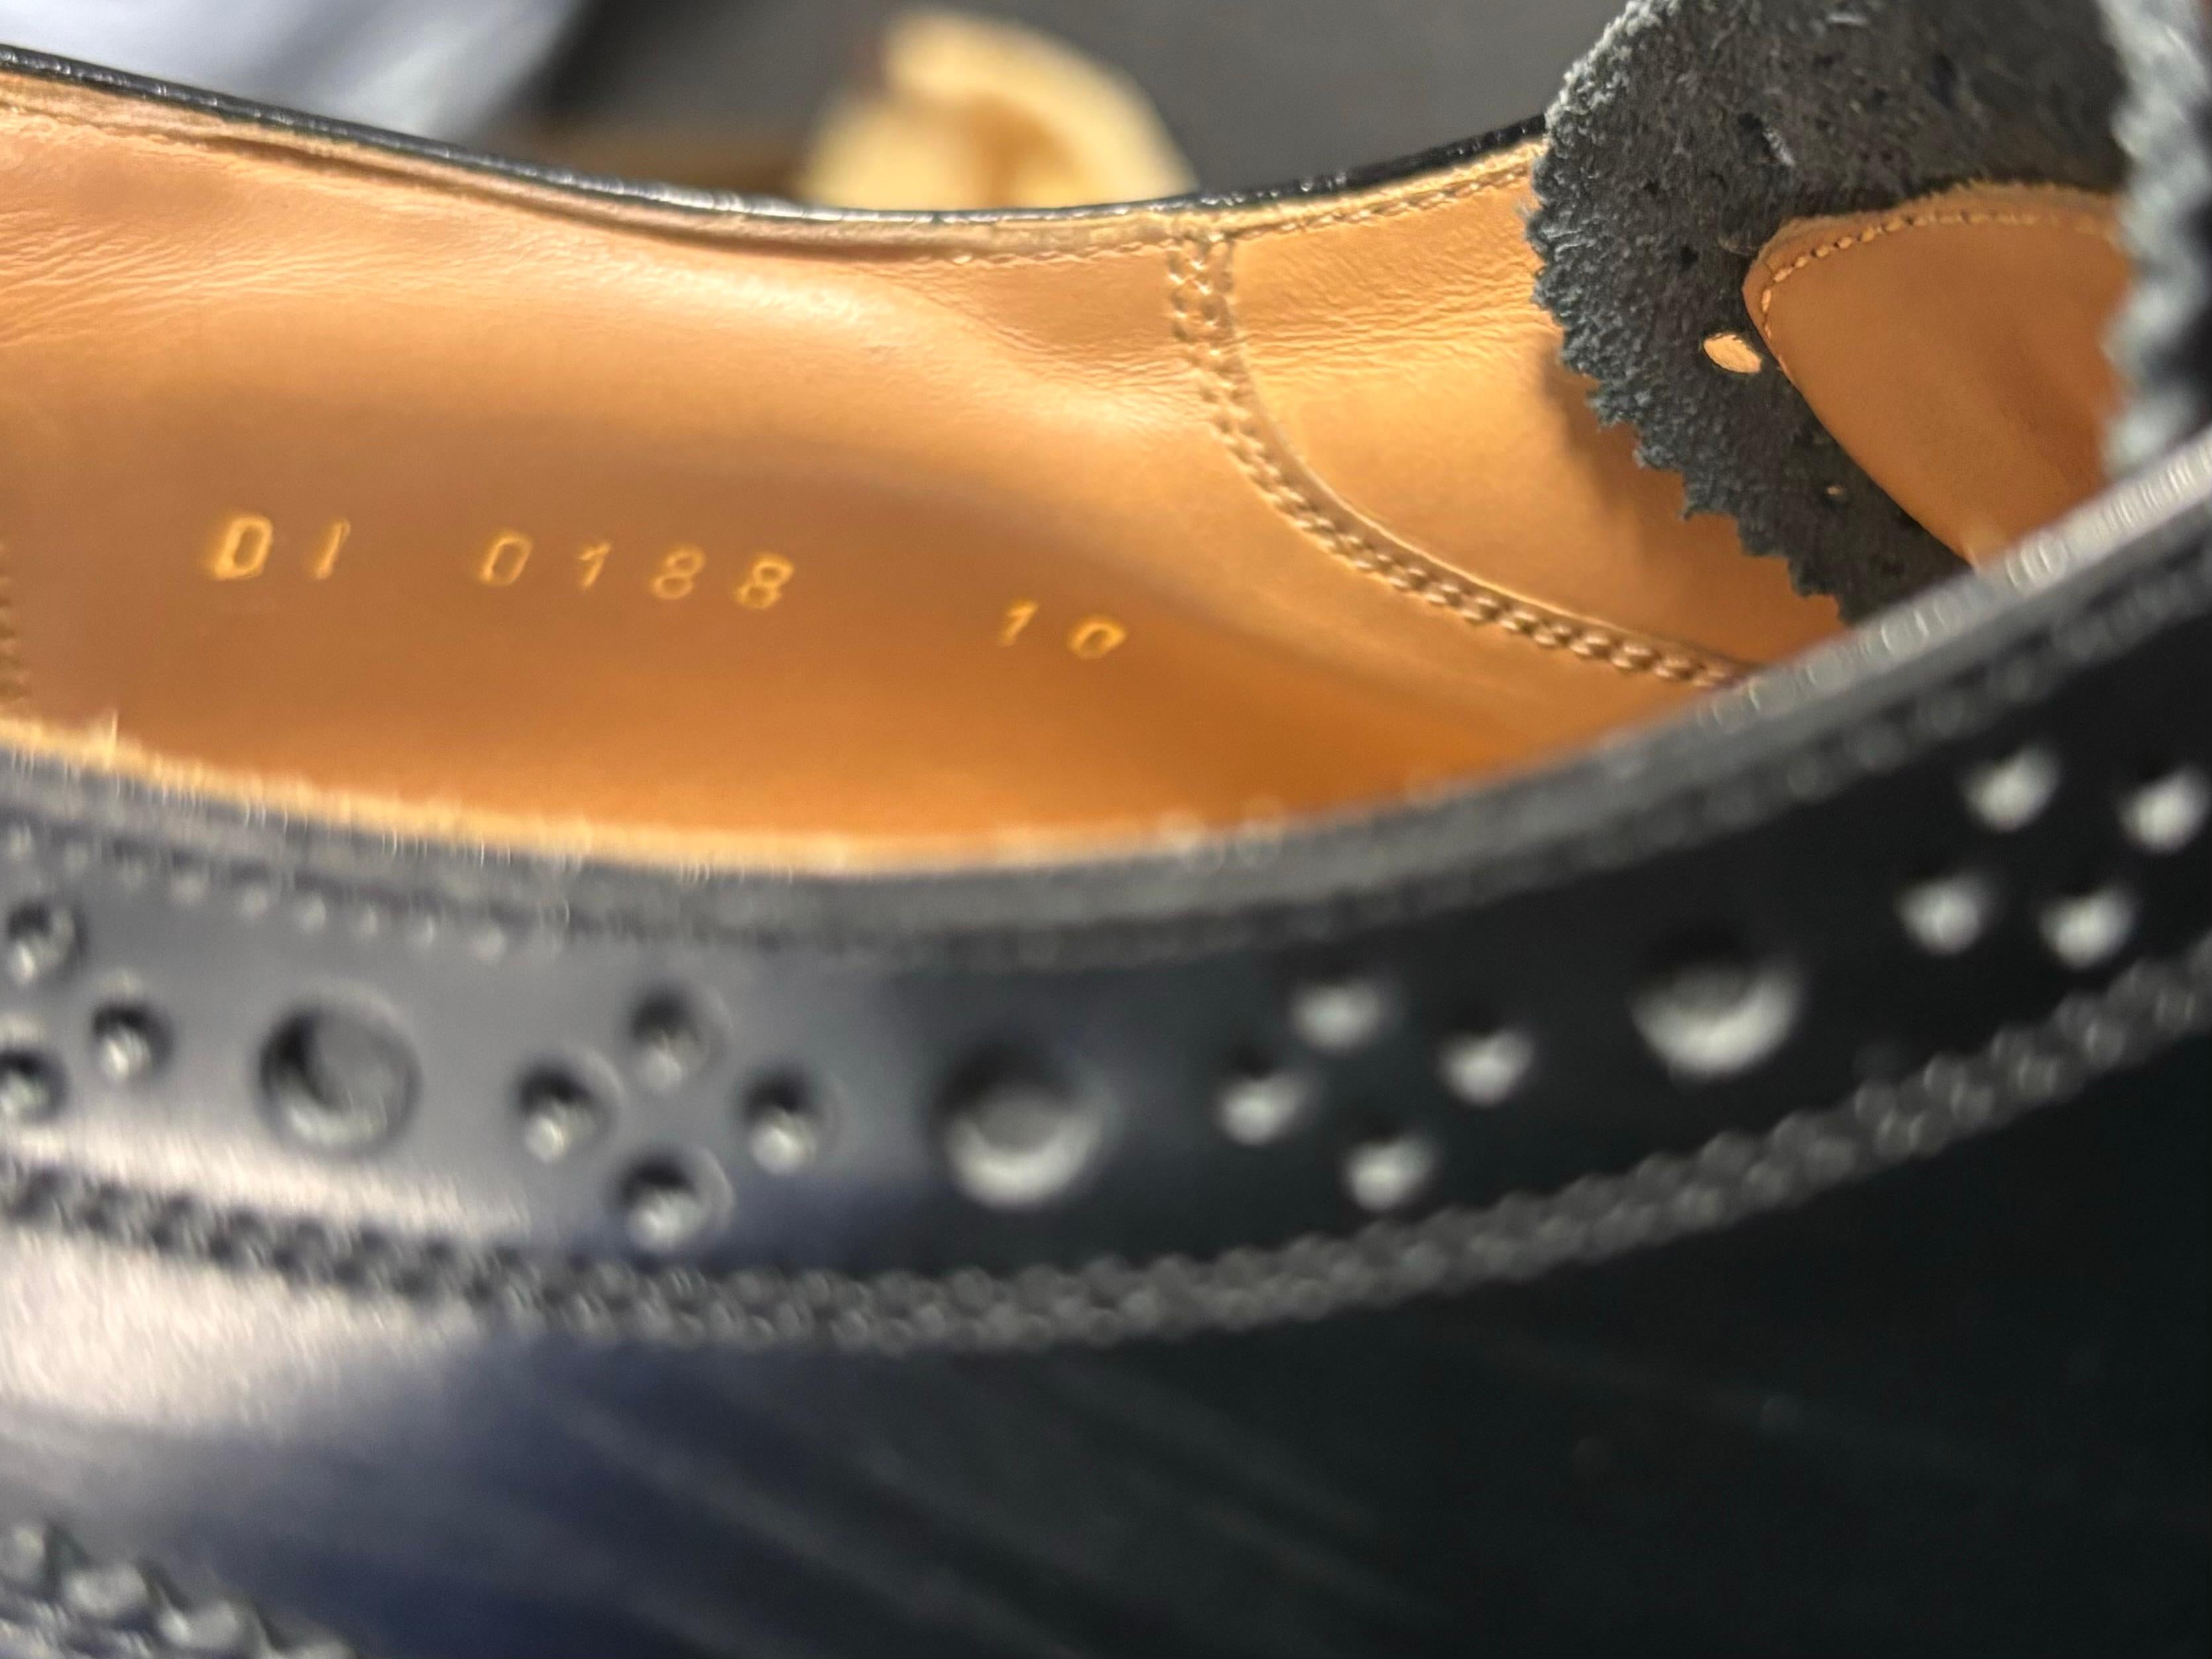 Louis Vuitton Men Shoes Oxford Derbies Size 10USA, S570 For Sale 2